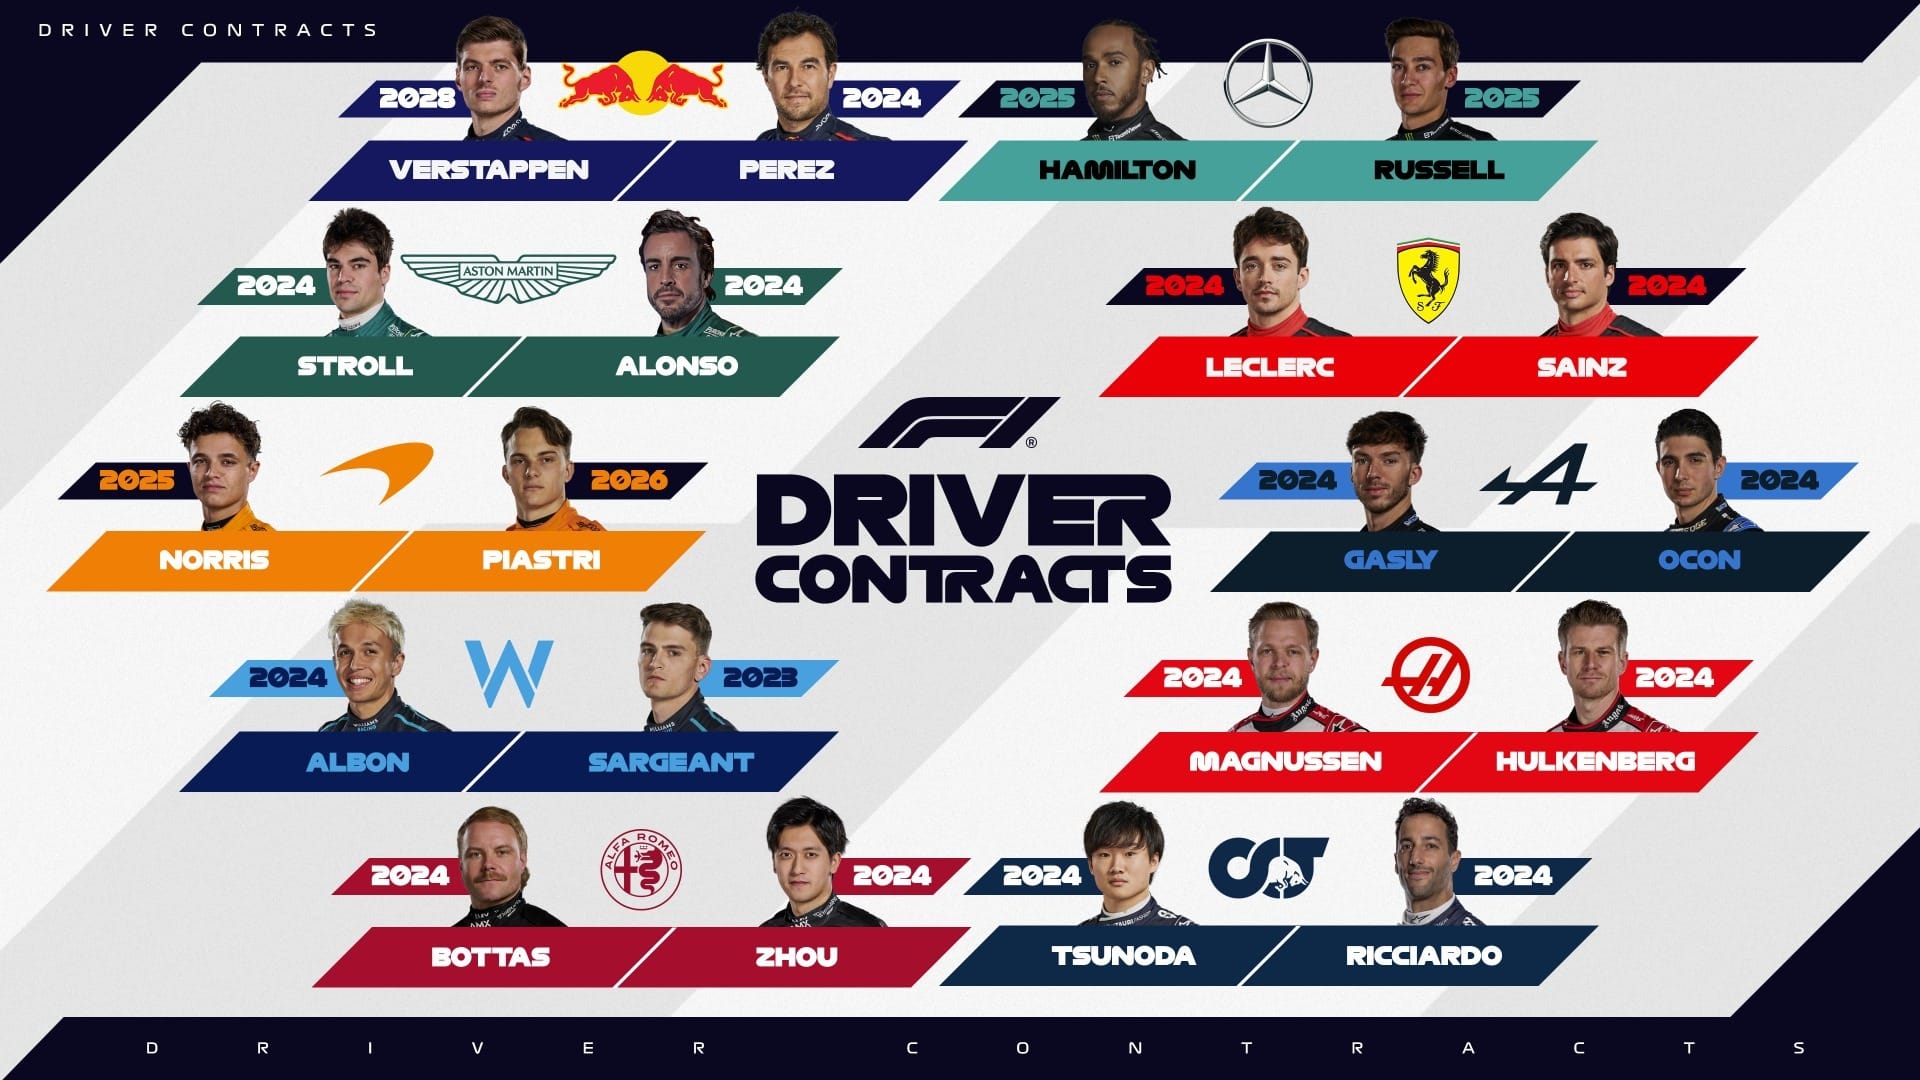 Confira a duração dos contratos dos 20 pilotos do grid da F1 Band